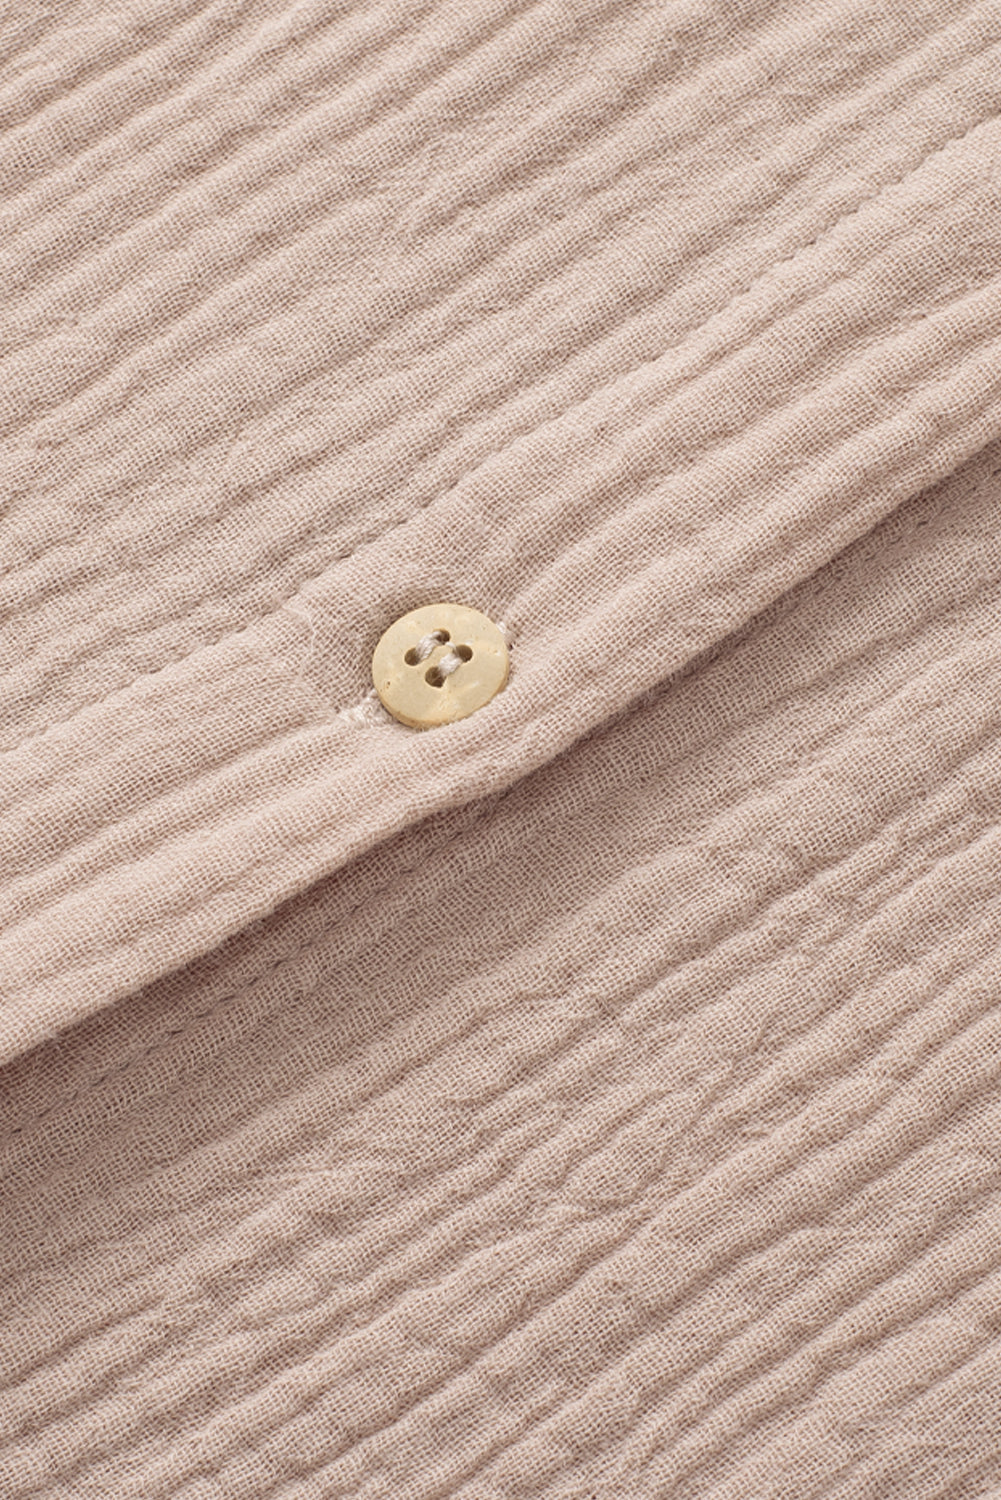 Camicia abbottonata con colletto rovesciato increspato color kaki con tasca